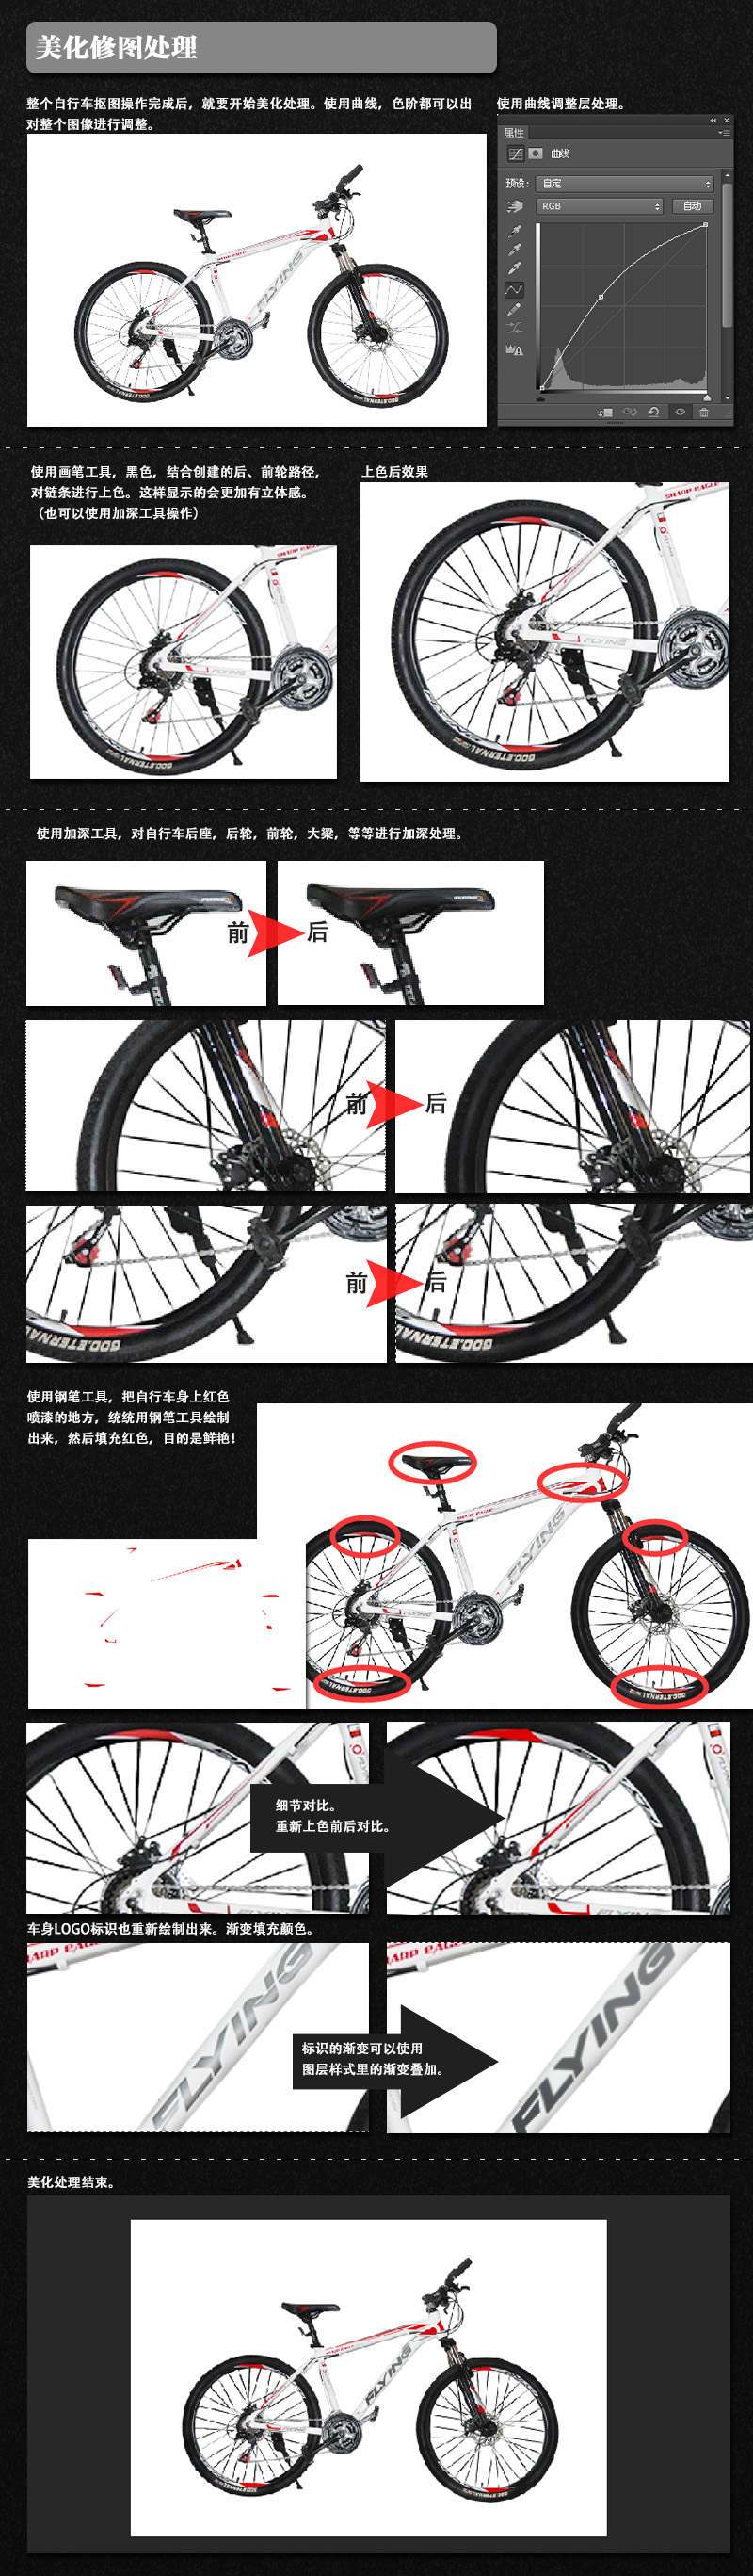 淘宝美工教程Photoshop自行车修图处理2